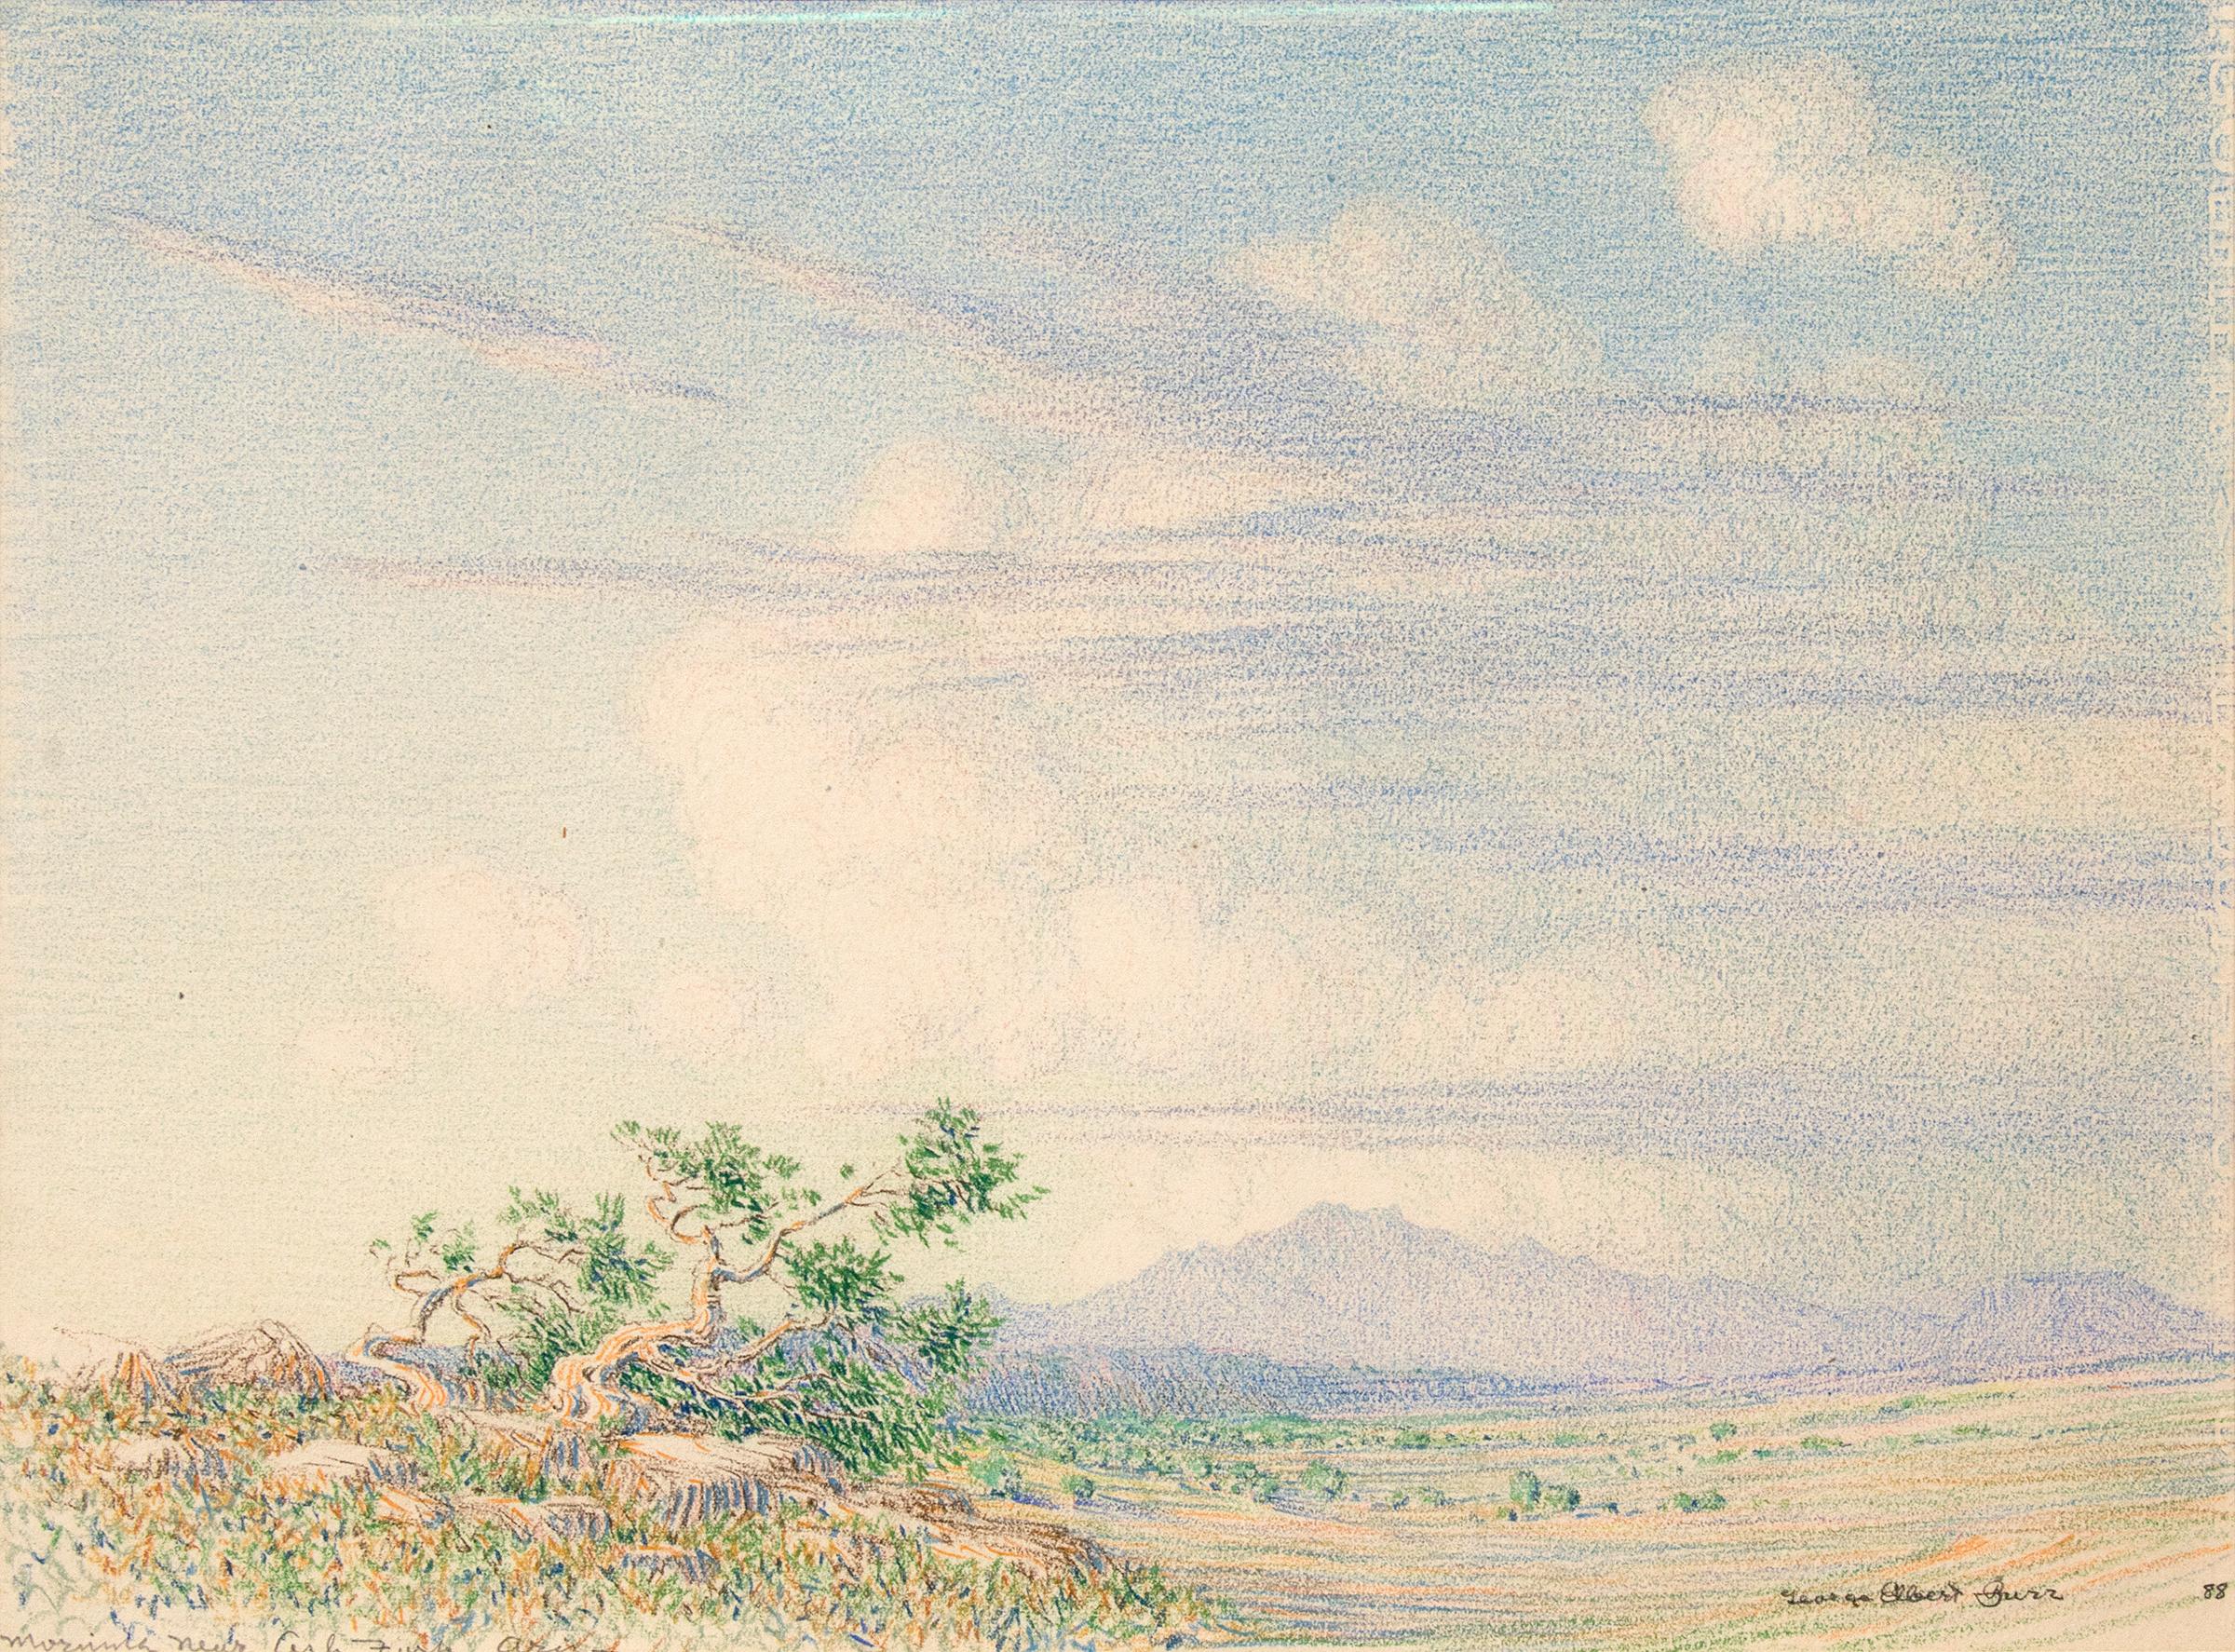 Morning Near Arizona, dessin de paysage du sud-ouest du désert des années 1880 - Art de George Elbert Burr